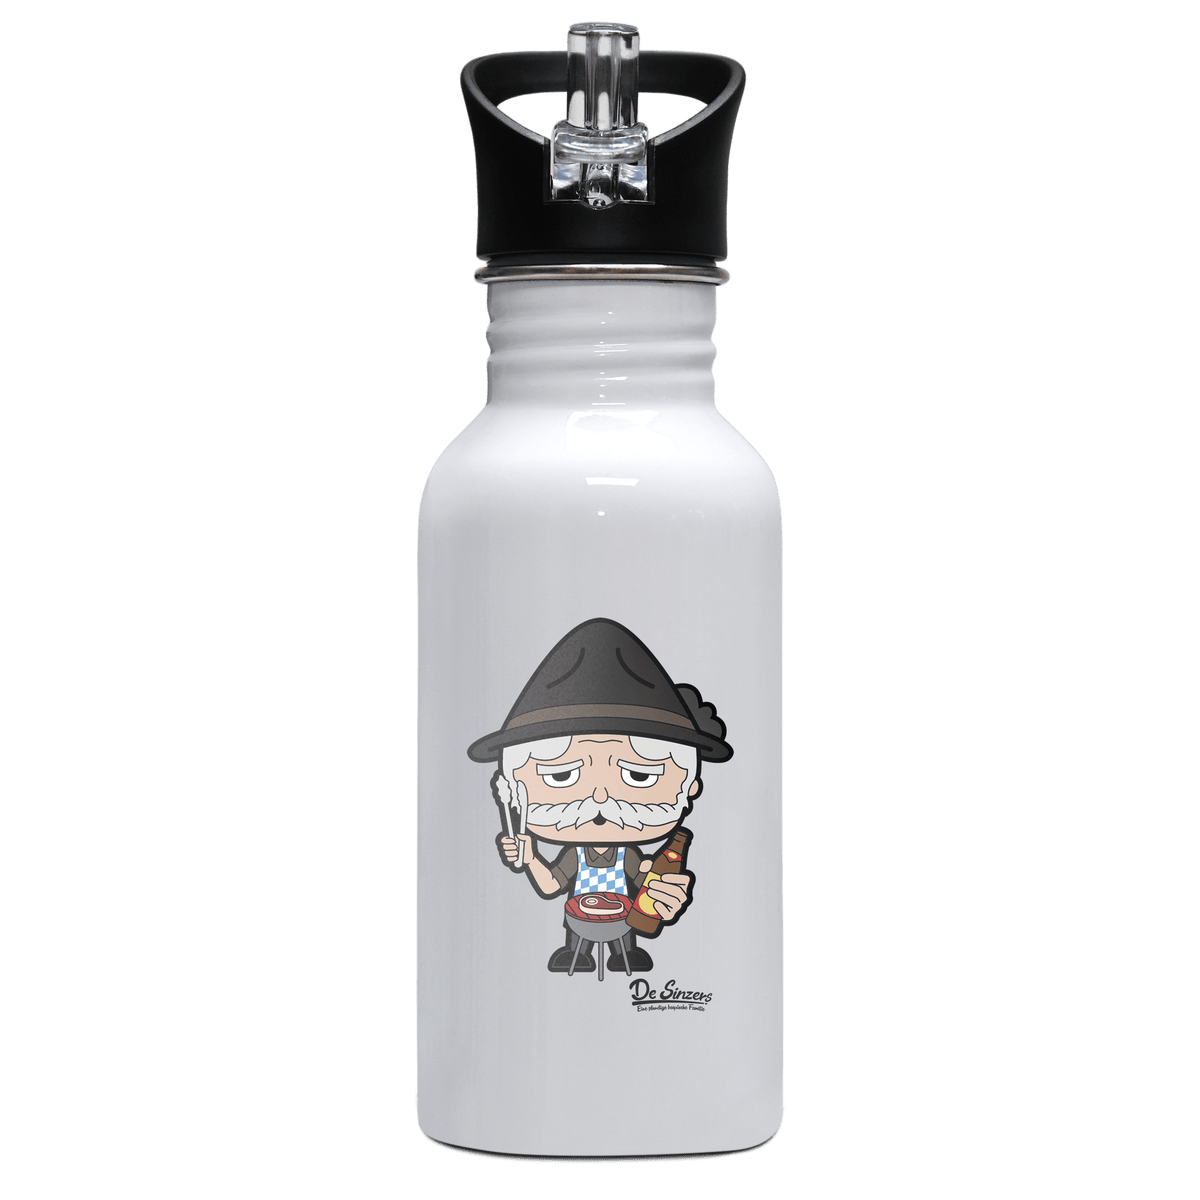 Da Oid Sinzer Griller Edelstahl Trinkflasche mit klappbarem Mundstueck 500ml Weiss Rotwand Front